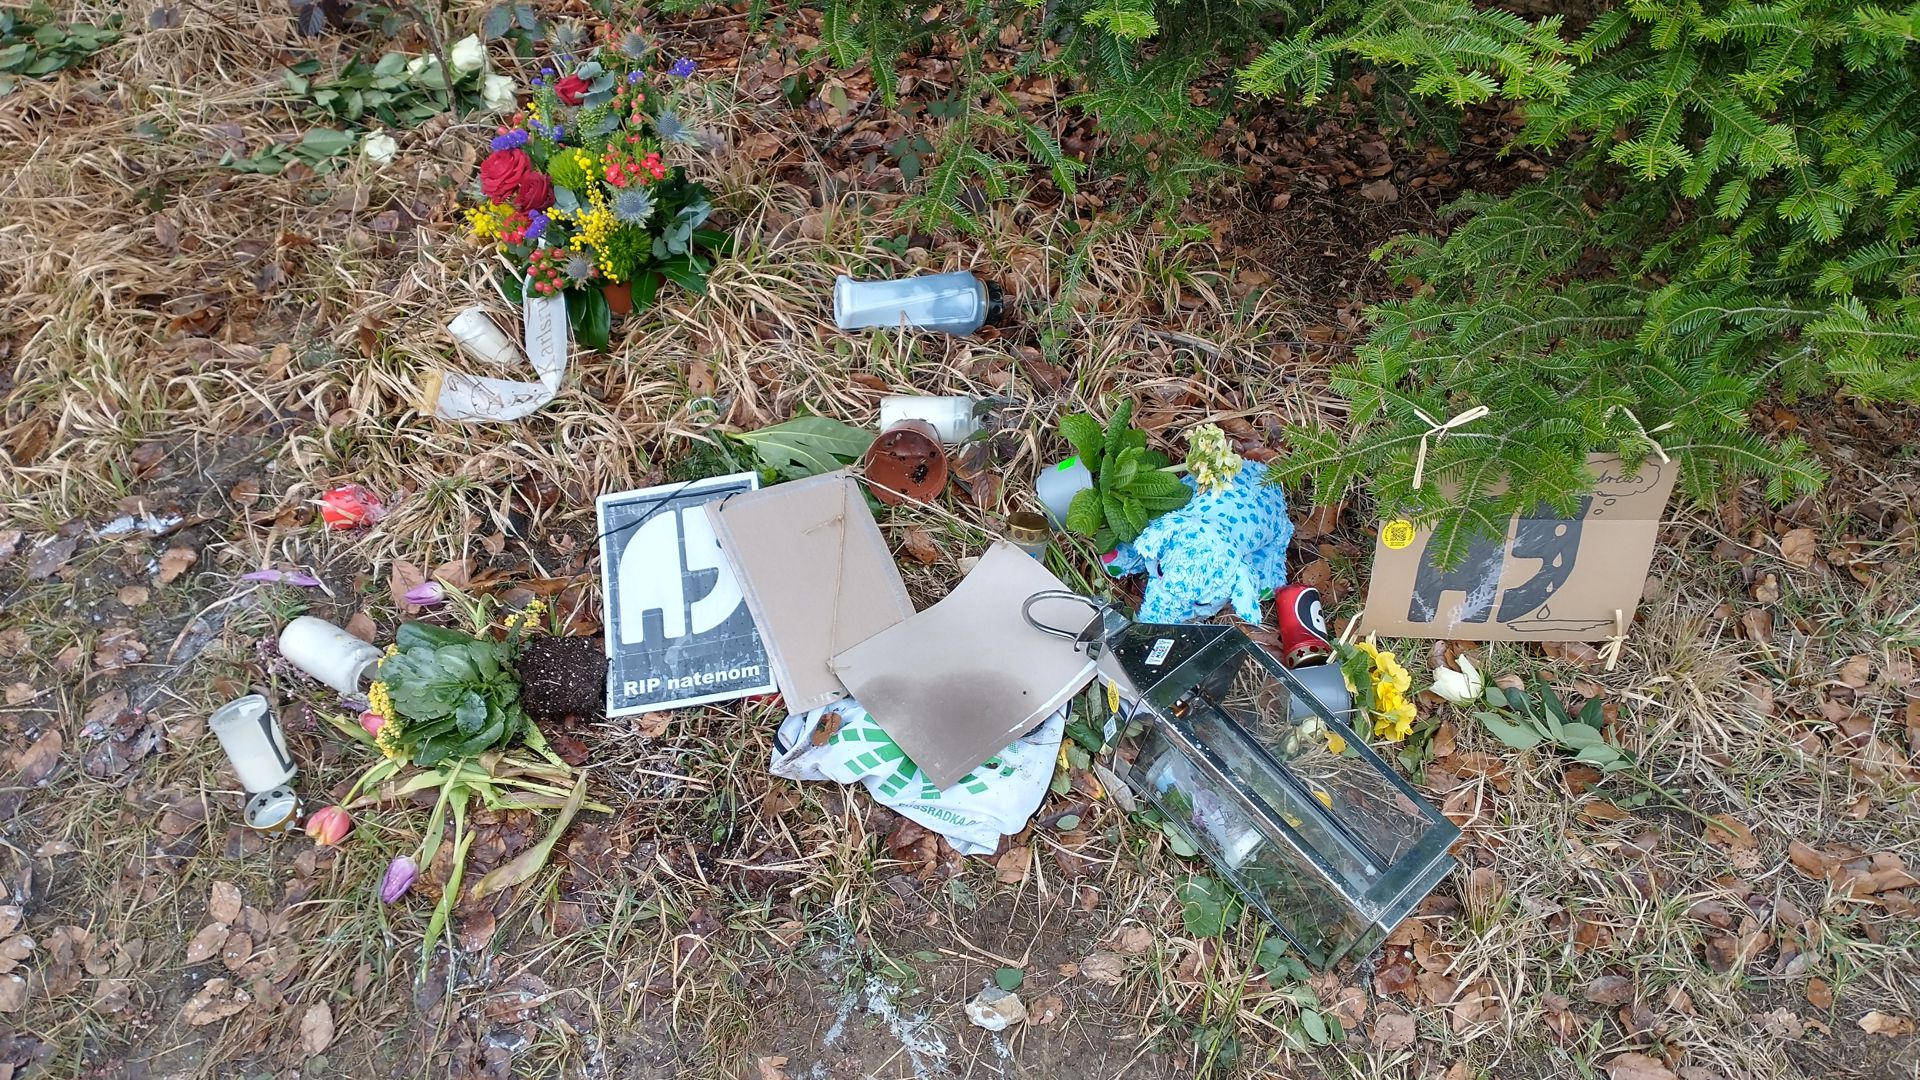 Unbekannte haben die Gedenkstätte für Andreas Mandalka zerstört. Der bundesweit bekannte Radaktivist ist am 30. Januar auf der Landesstraße bei Schellbronn tödlich verunglückt.